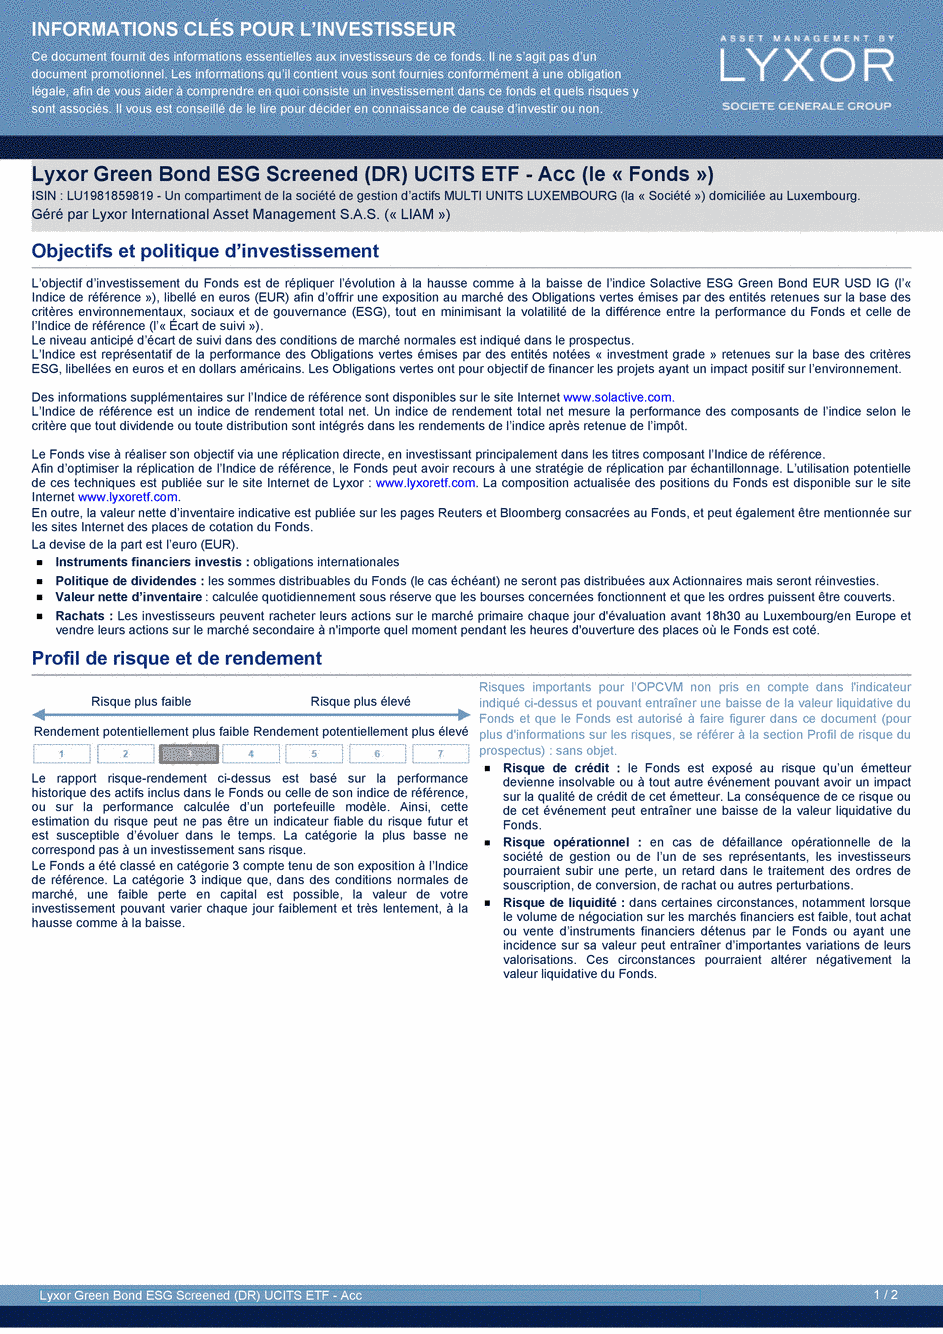 DICI Lyxor Green Bond ESG Screened (DR) UCITS ETF - Acc - 14/05/2019 - Français